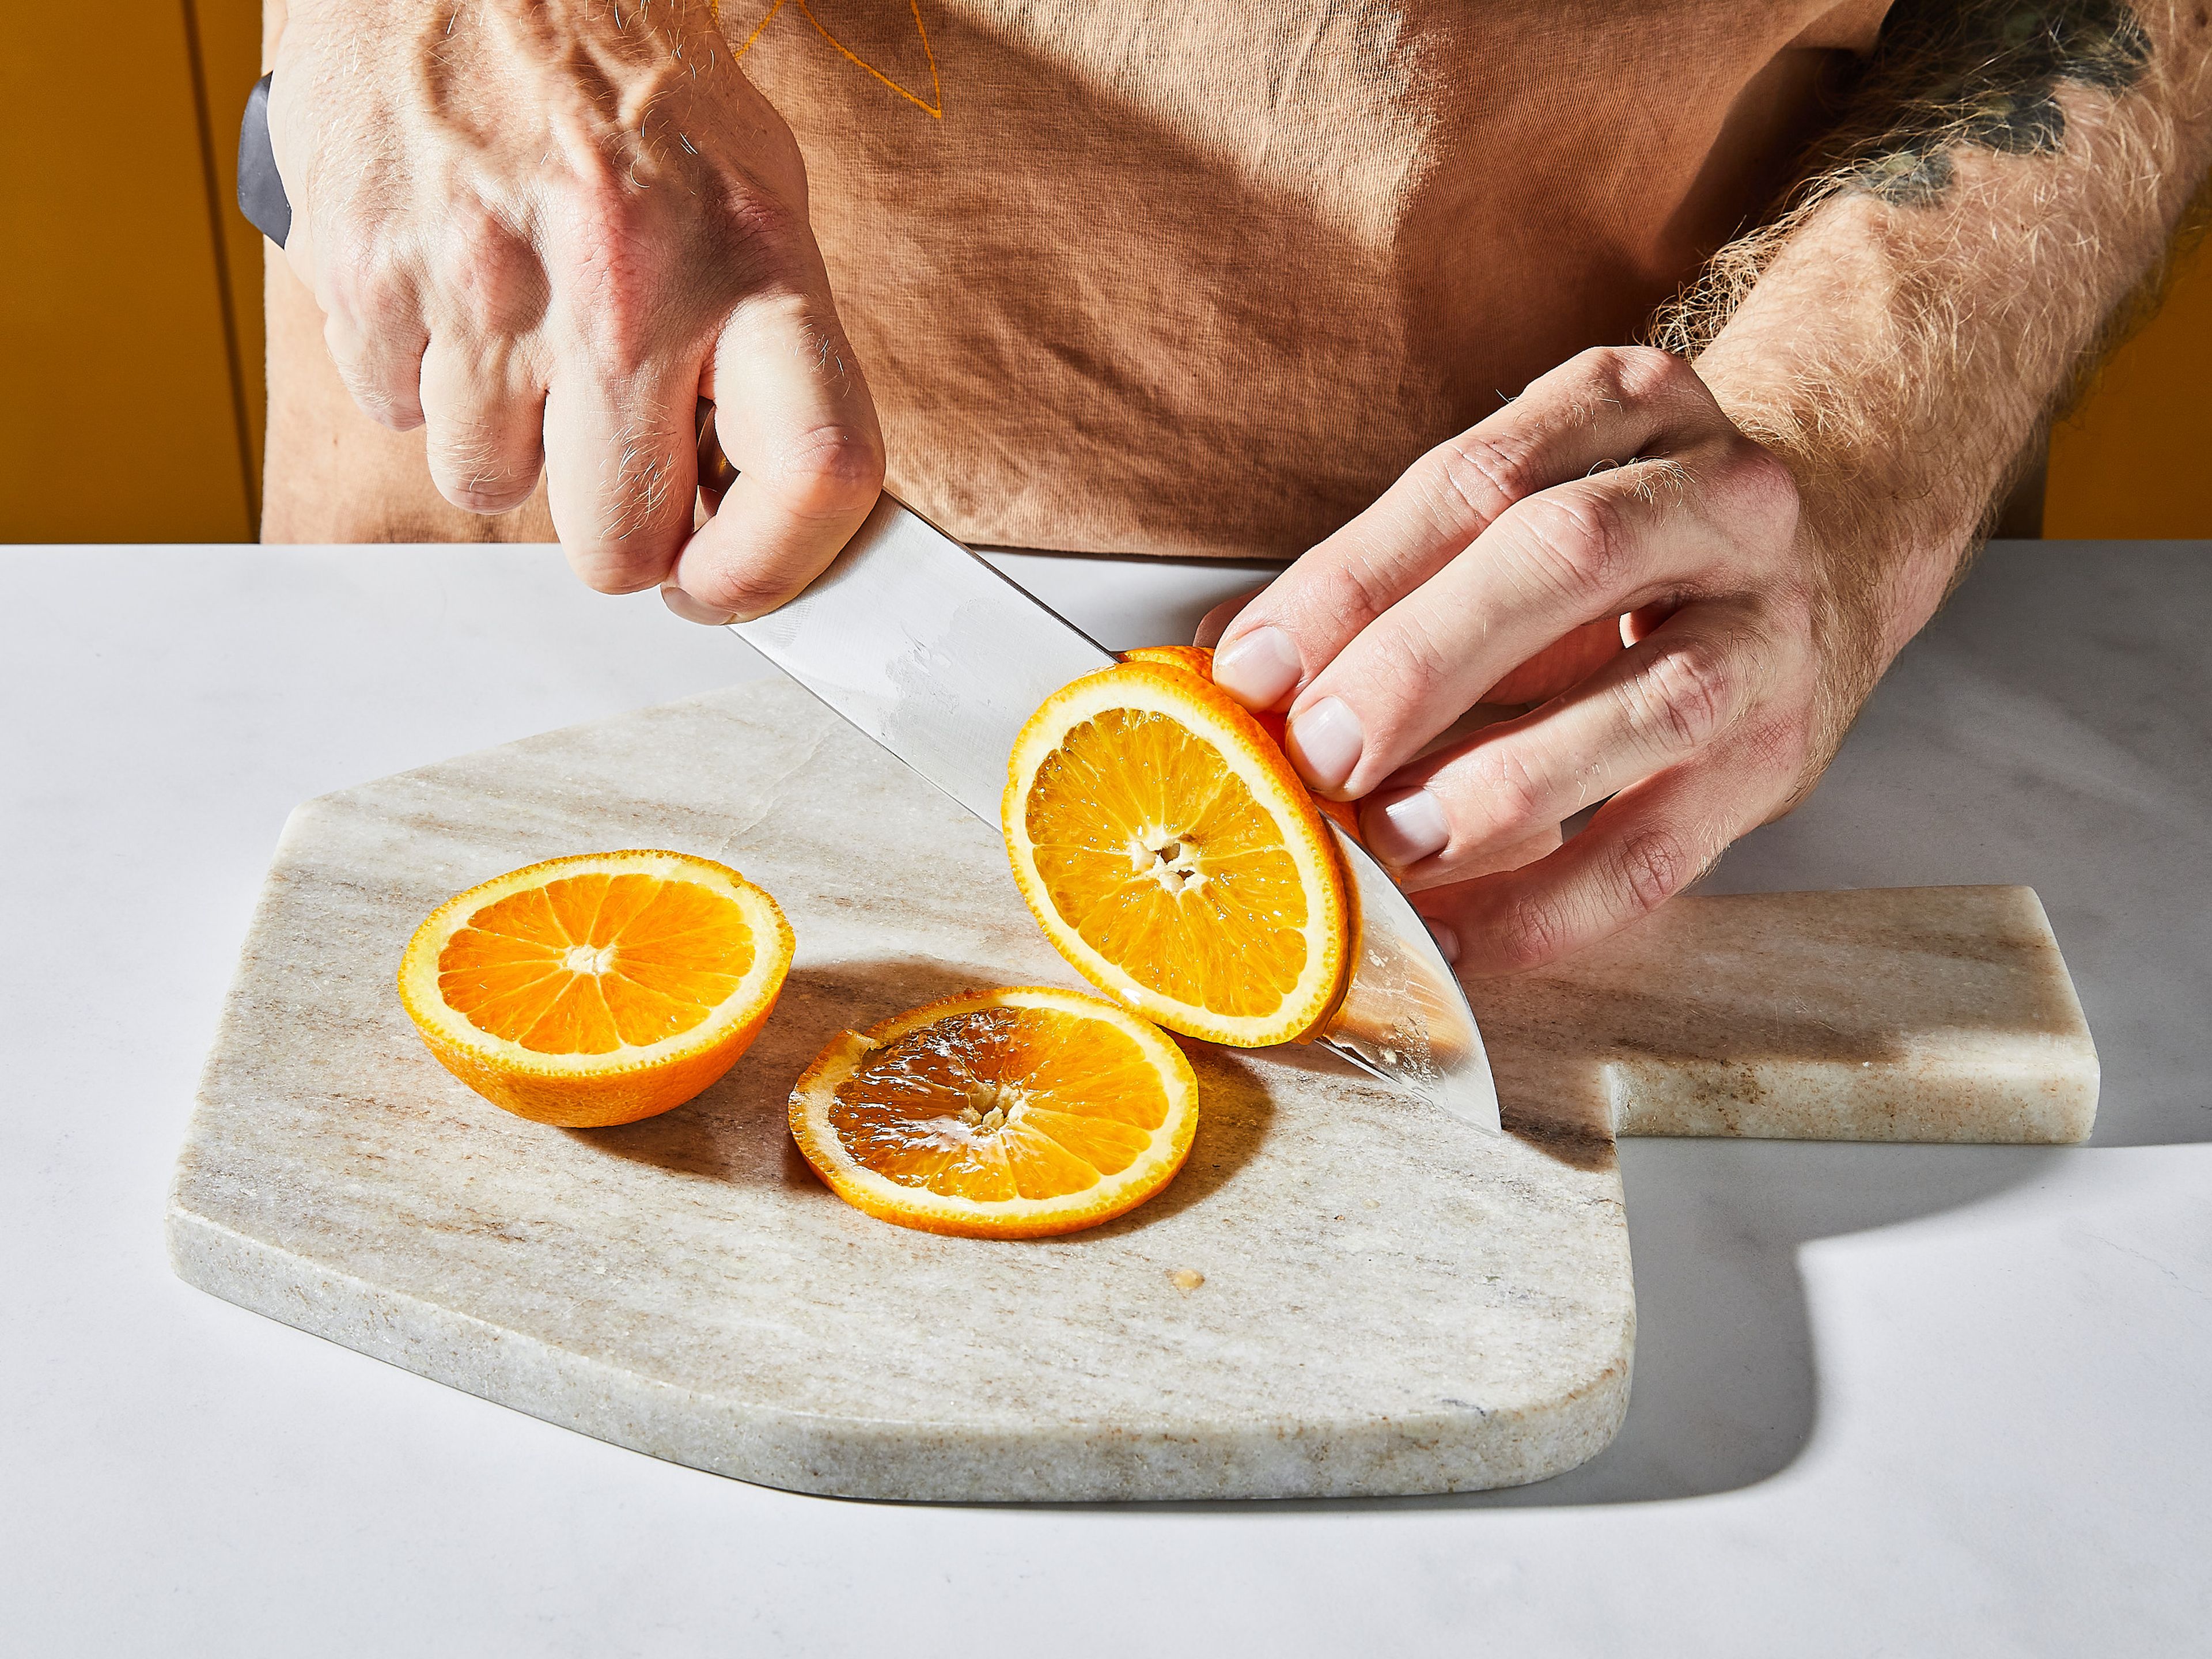 Orange unter heißem Wasser waschen, abtrocknen und 2 dünne Scheiben schneiden. Oliven auf einen Zahnstocher spießen.